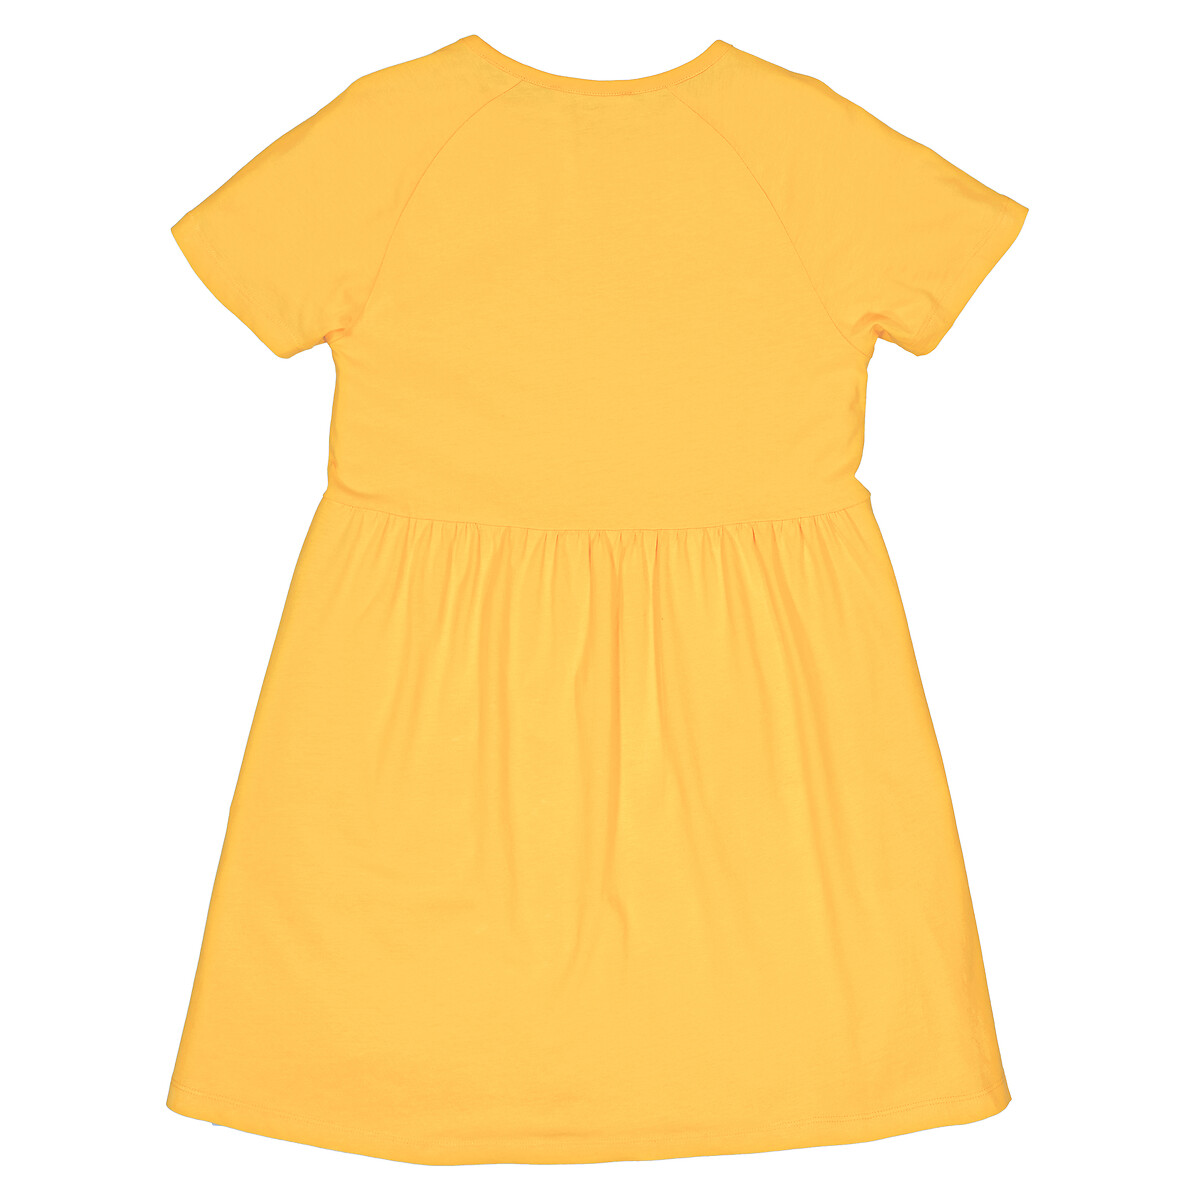 Платье С короткими рукавами и с отделкой оборками 12 лет -150 см желтый LaRedoute, размер 12 лет -150 см - фото 4